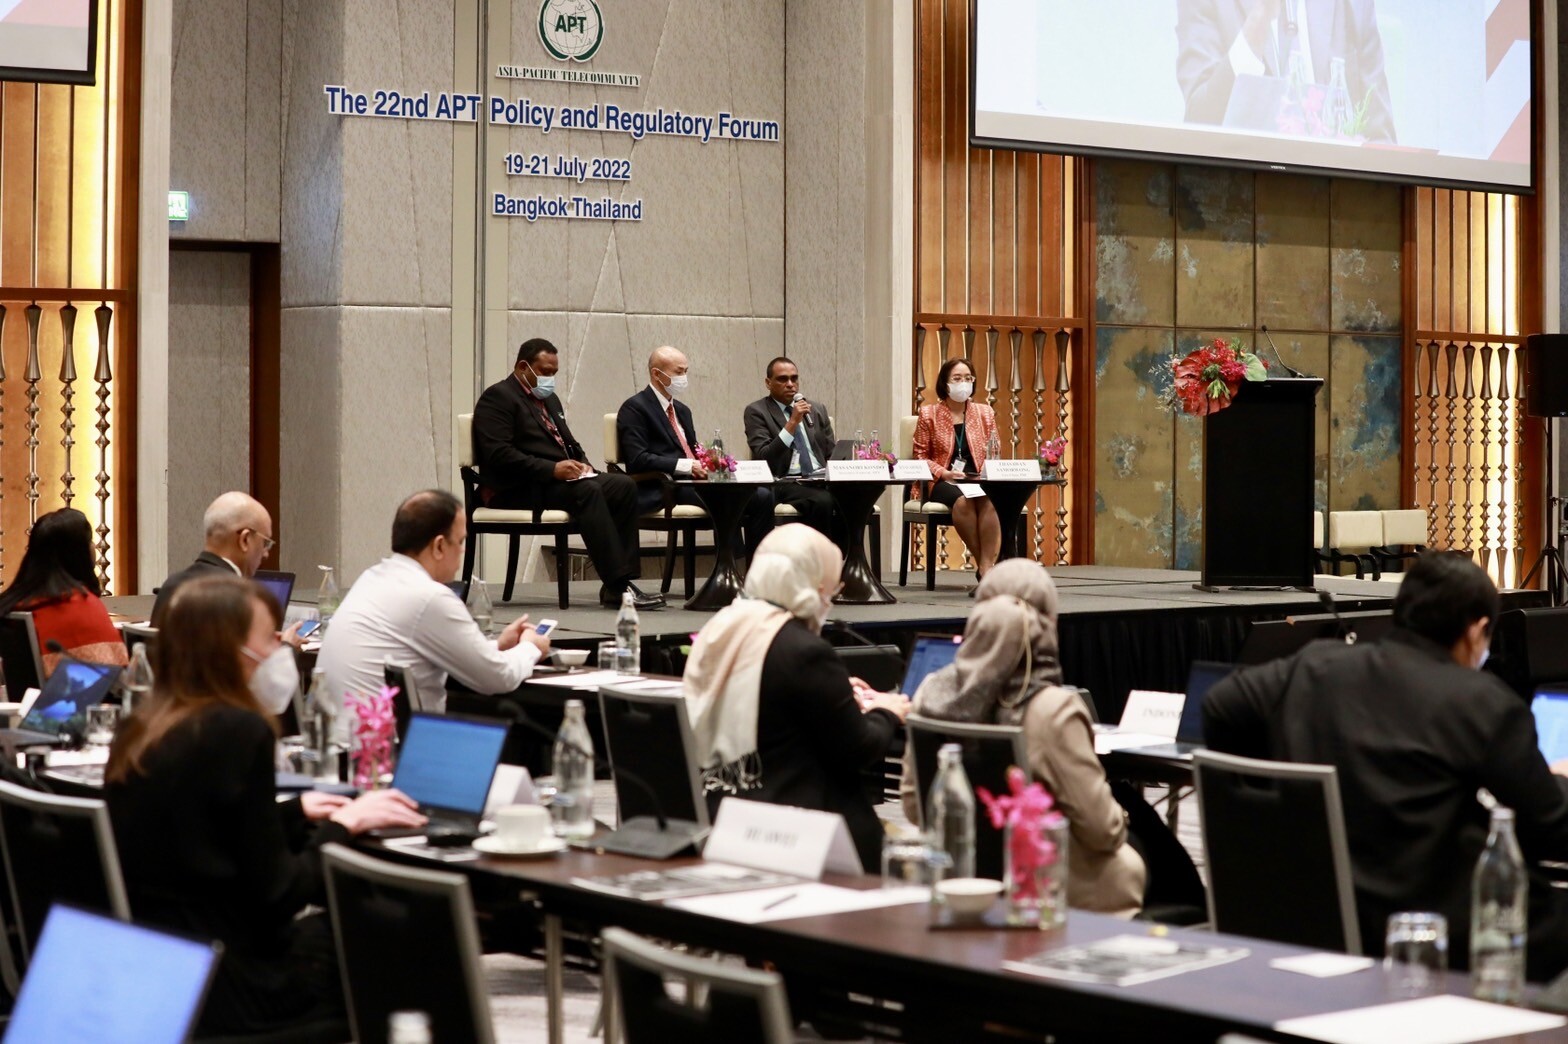 ดีอีเอส  ร่วมกำหนดนโยบายและการกำกับดูแล ICT และโทรคมนาคม สำหรับภูมิภาคเอเชียและแปซิฟิก ในเวที APT Policy and Regulatory Forum ครั้งที่ 22